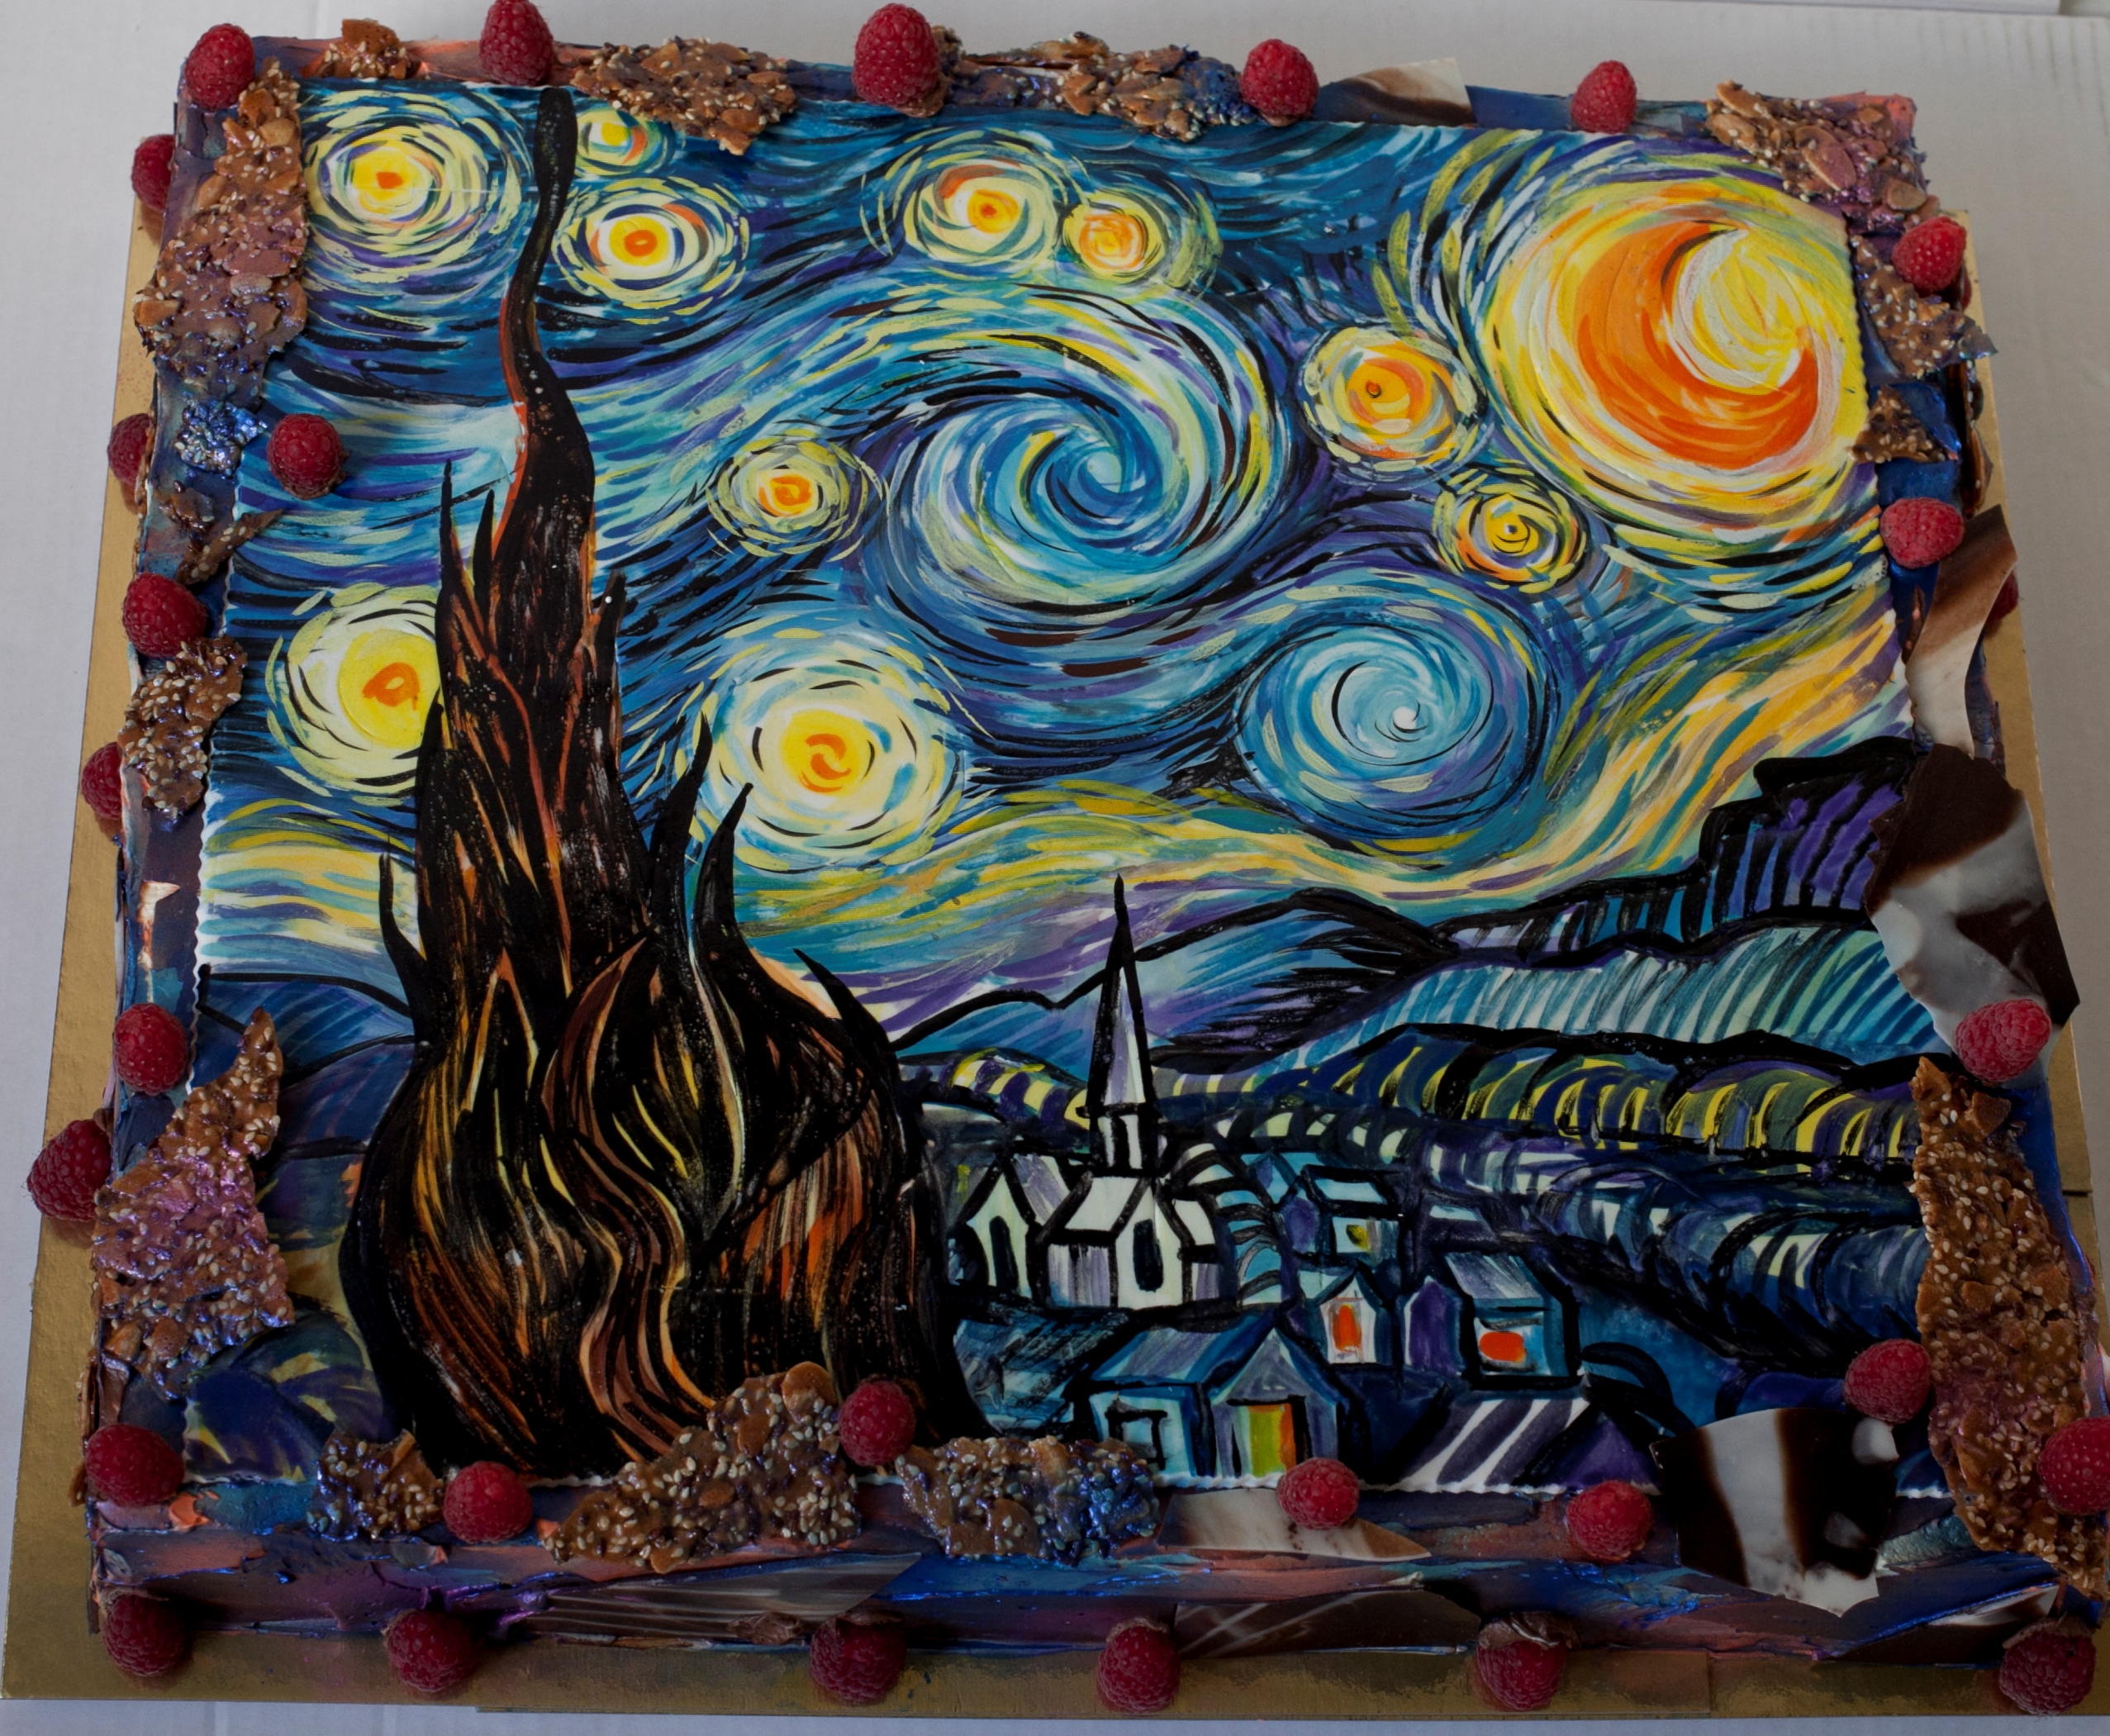 Торт «Звёздная ночь» Ван Гога ⋆ Авторская кондитерская «Морошка»